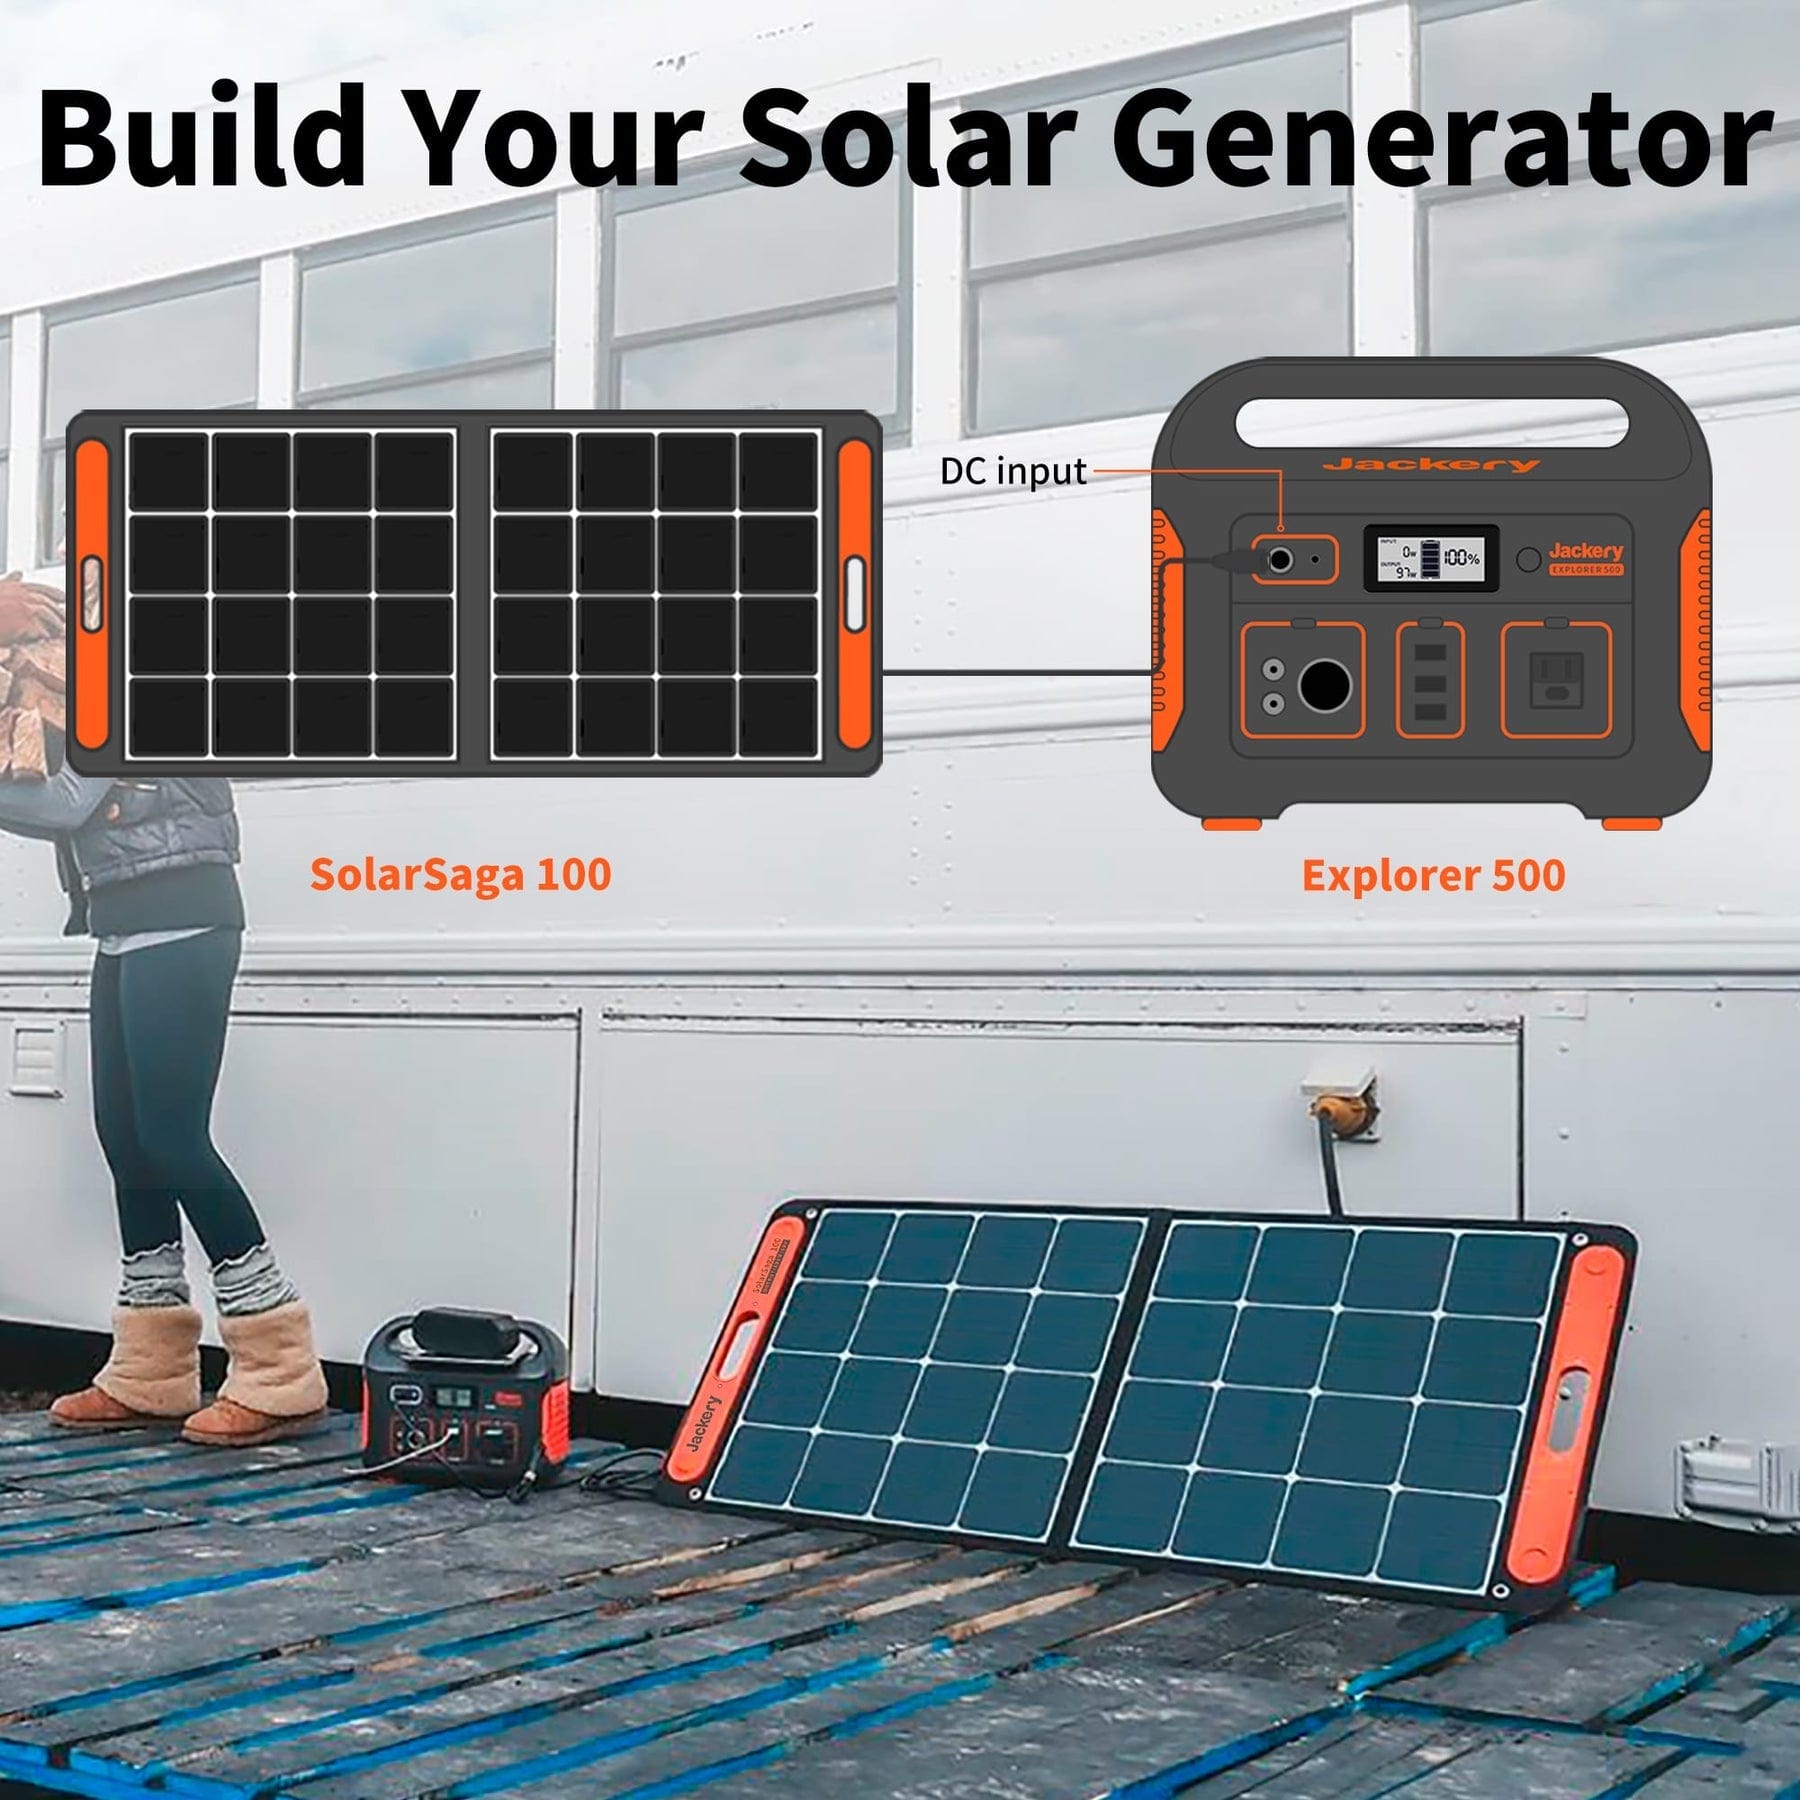 Jackery Generador Solar 500